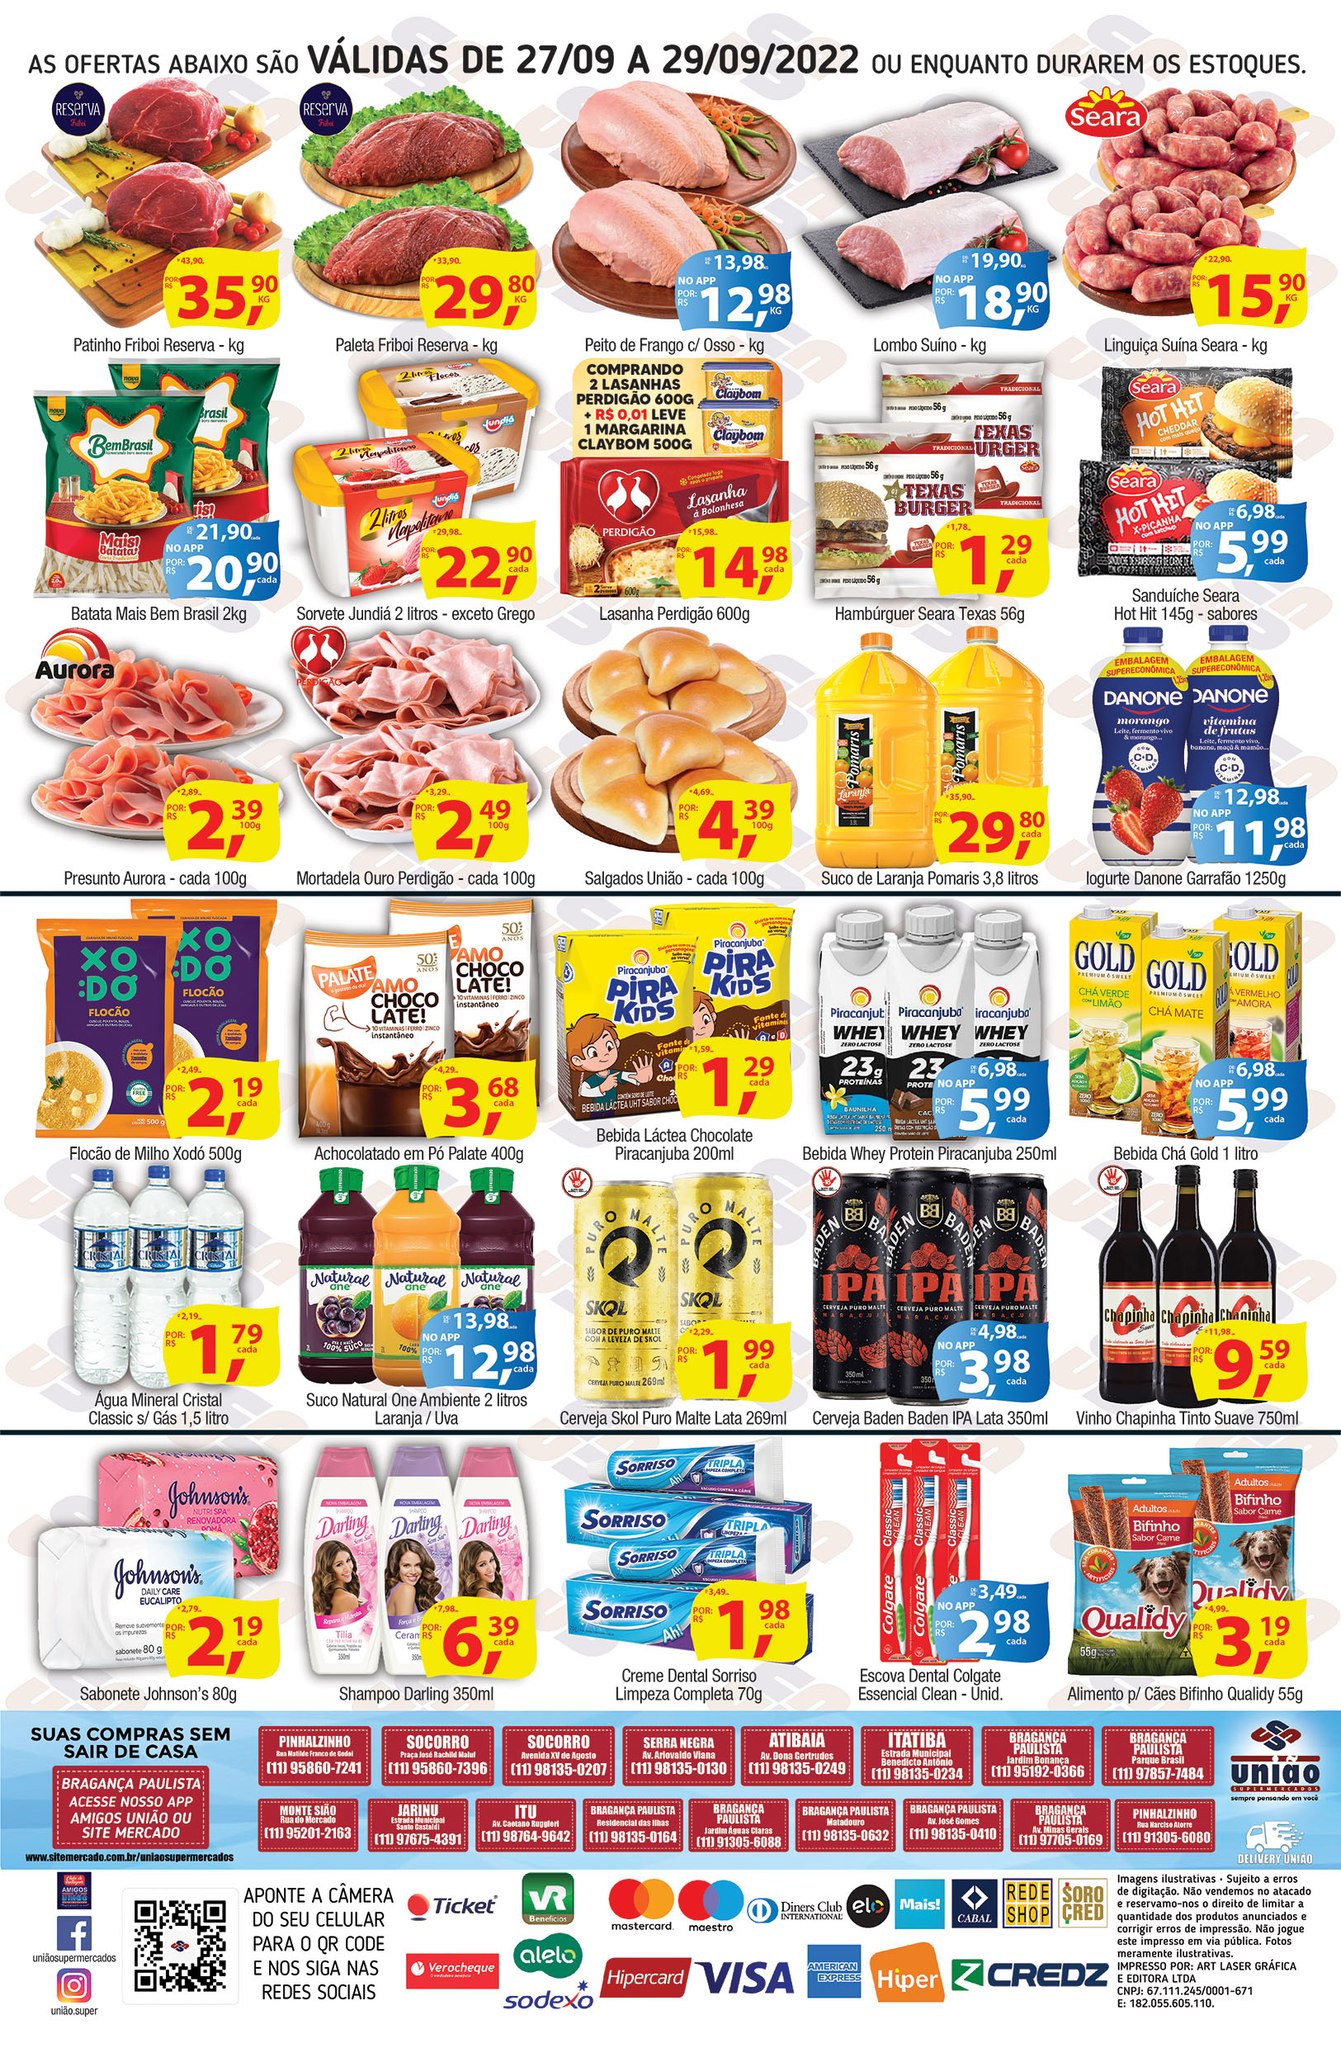 União Supermercados tem ofertas no açougue, bebidas e mais de 50 opções para hoje